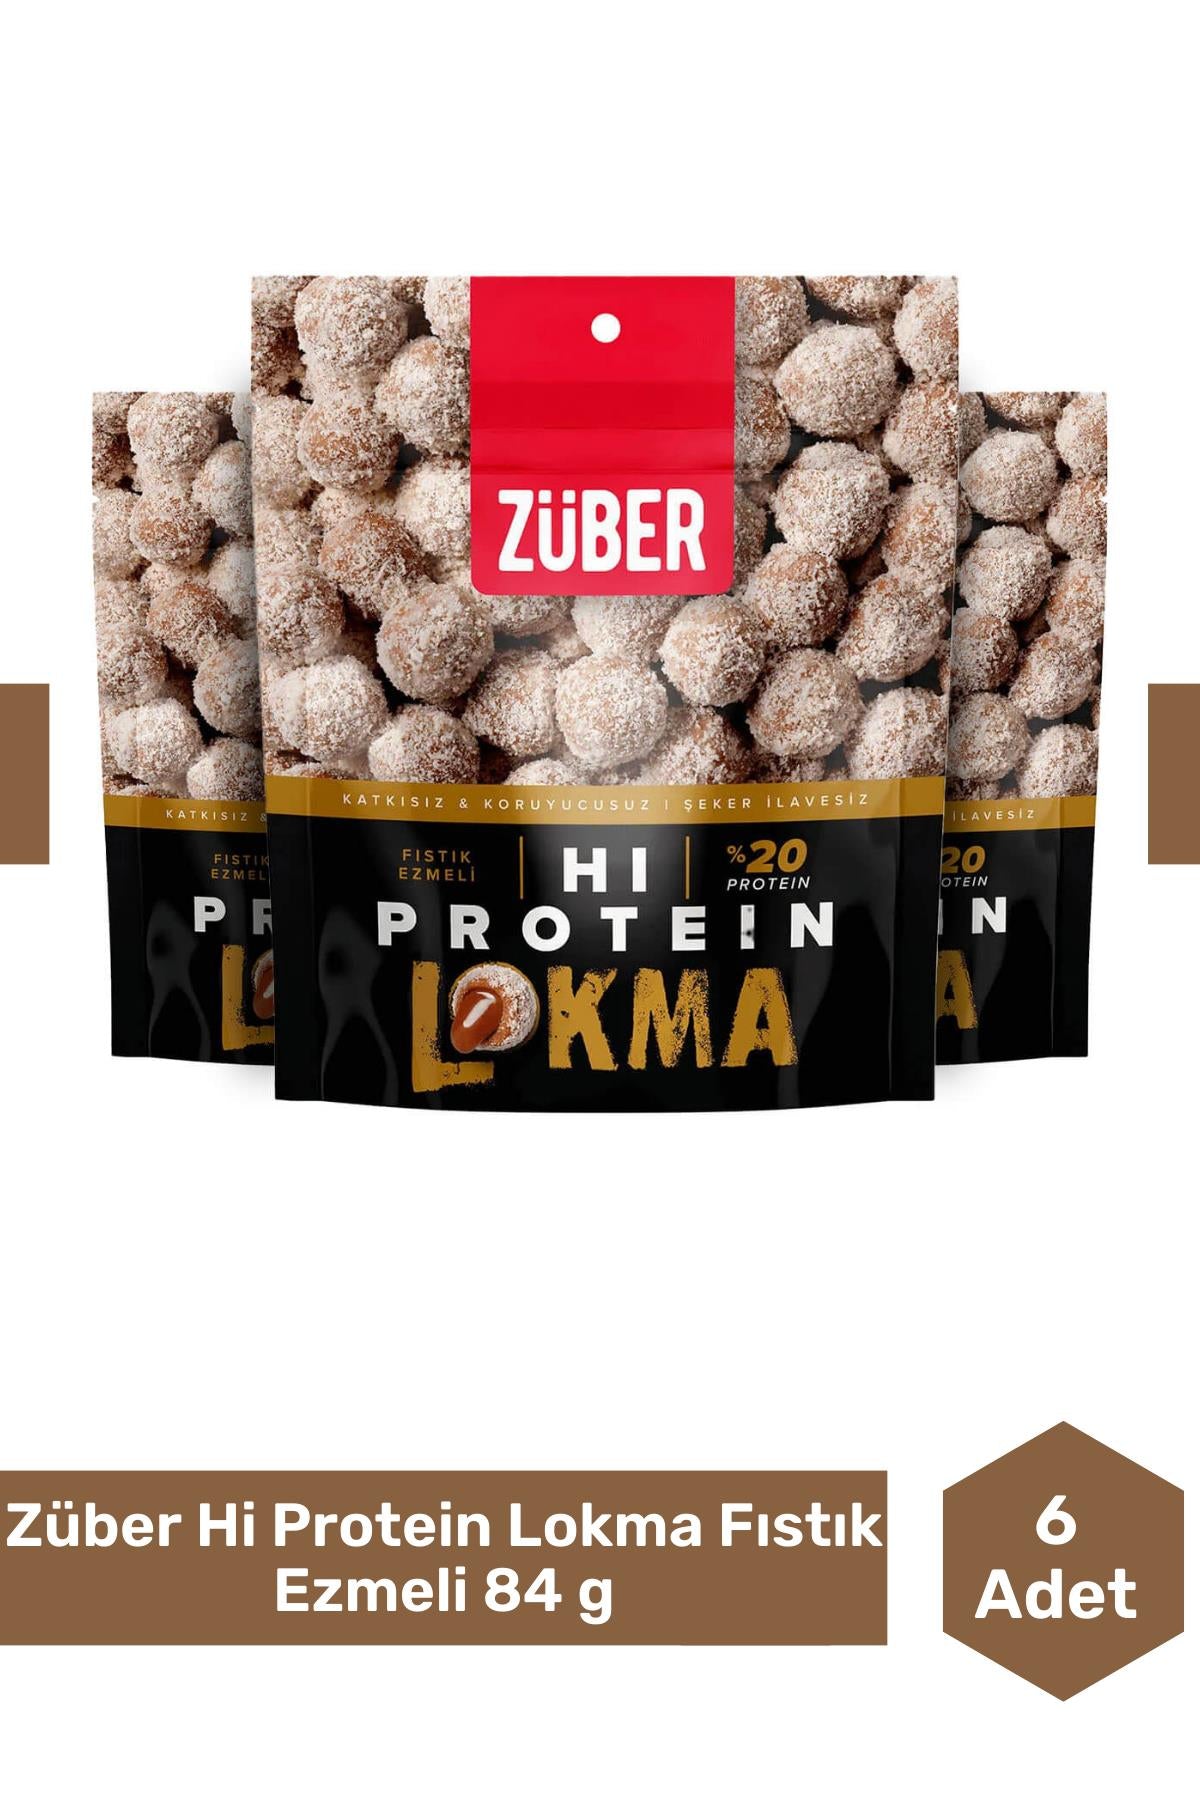 Züber Hi Protein Lokma Fıstık Ezmeli 84 g 6'lı Paket